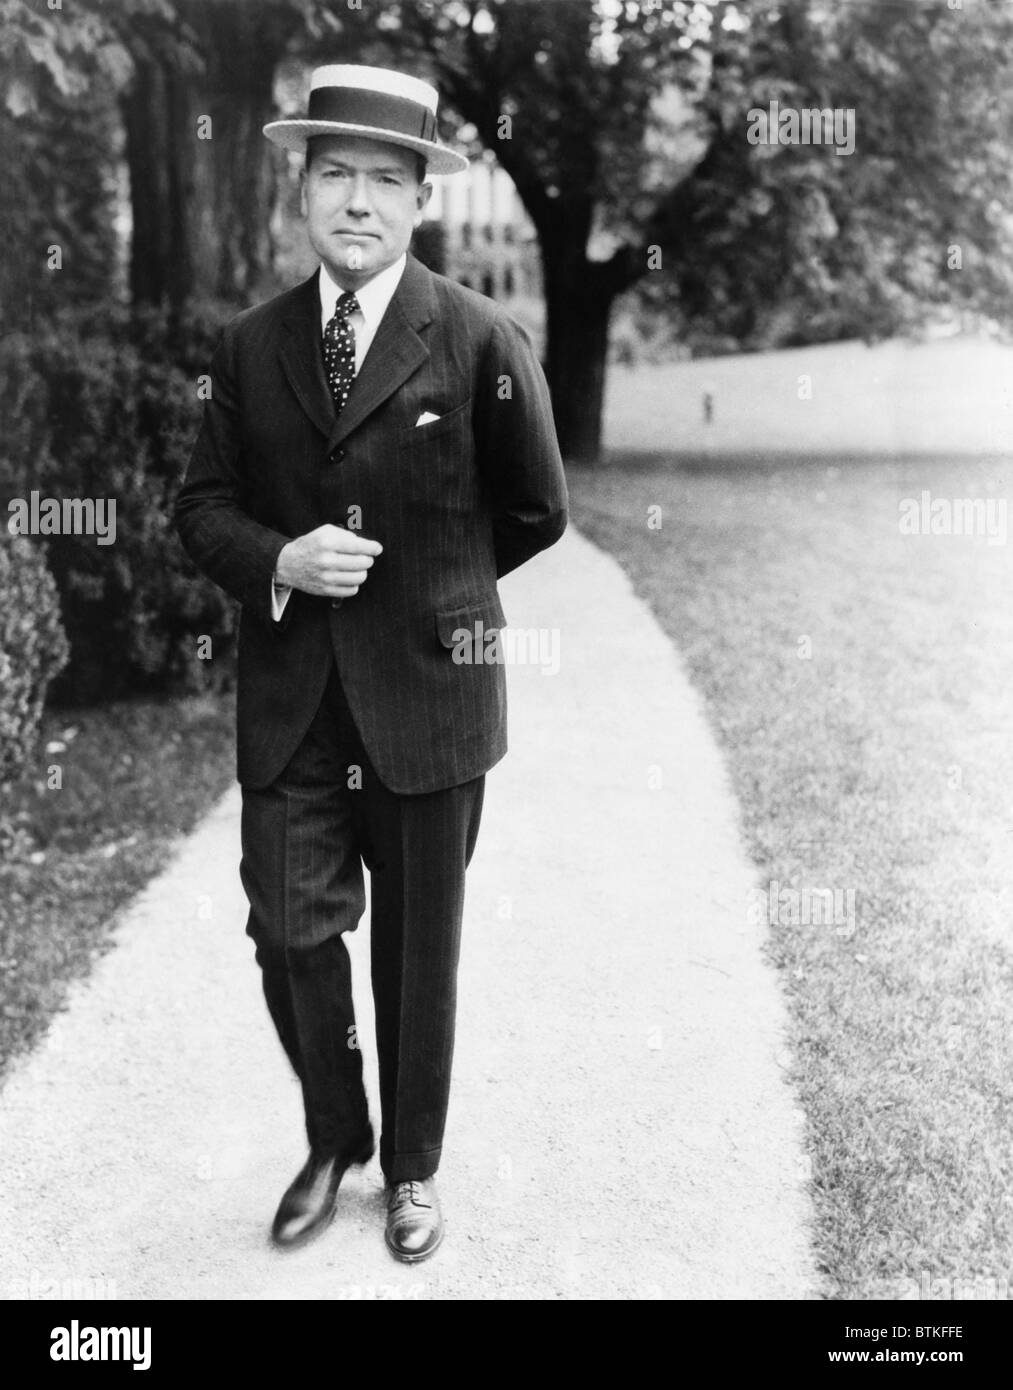 Fatos Históricos - Vlog66 - JOHN DAVISON ROCKEFELLER: O MAIOR FILANTROPO DA  HISTÓRIA Este senhor da foto é John Davison Rockefeller (1839-1937), o  maior filantropo da história em volume de doações, com